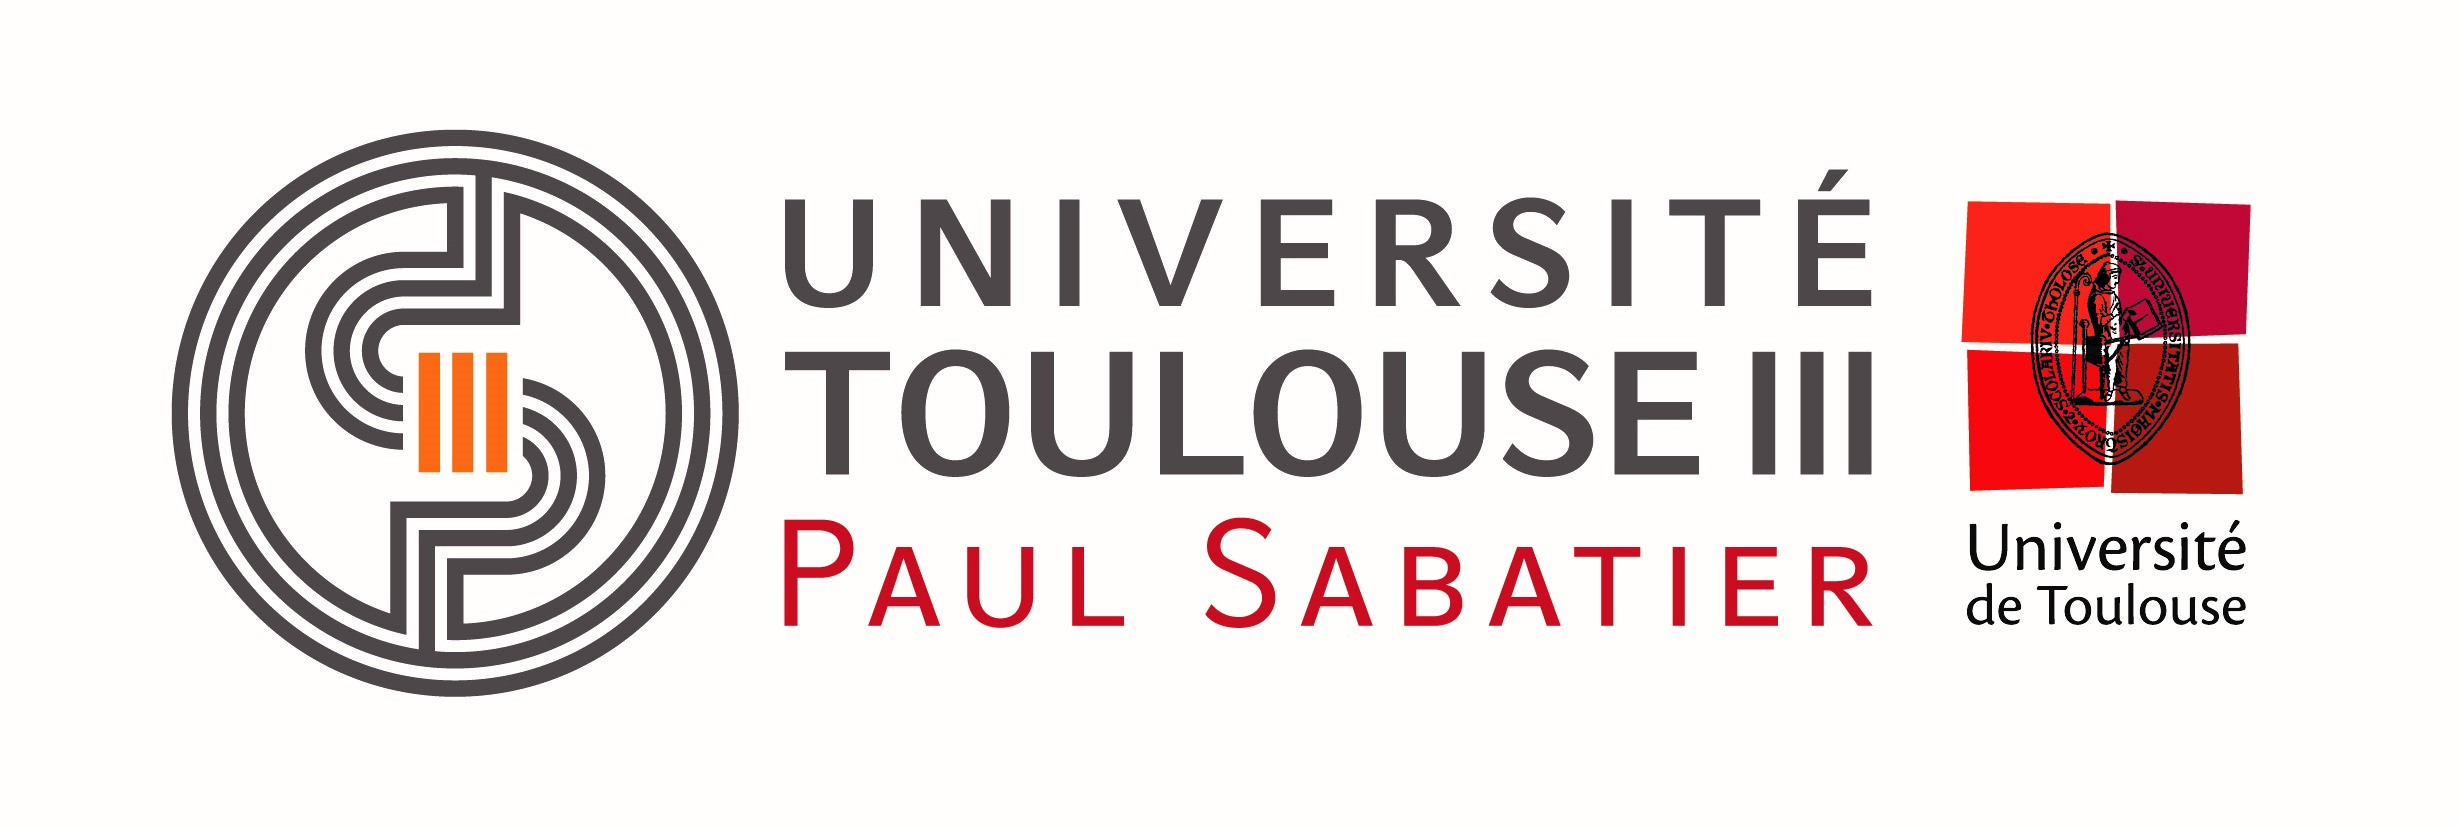 Paul Sabatier Toulouse University III